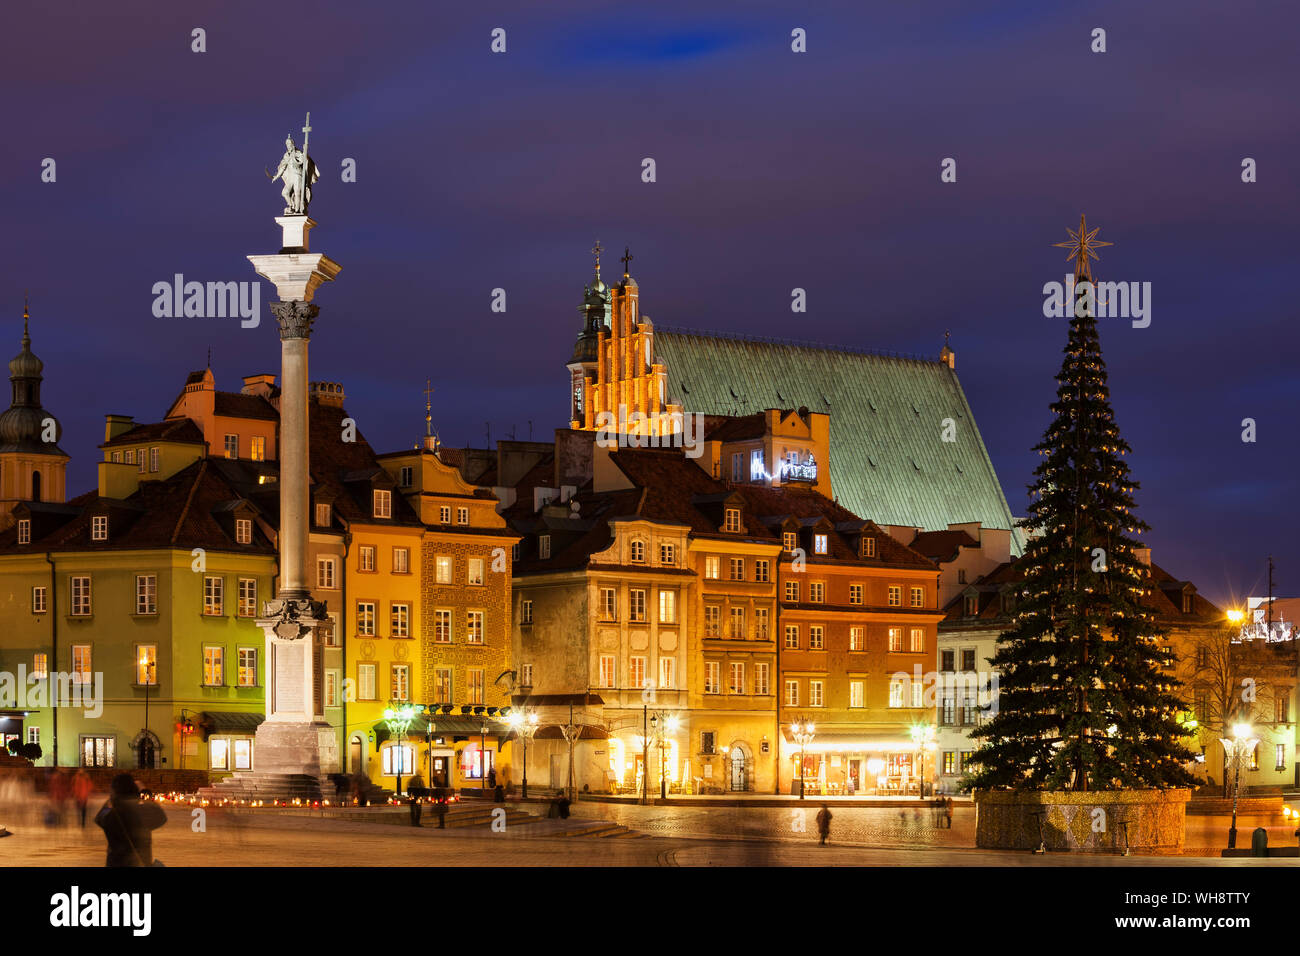 Old Town at Christmas at night, Warsaw, Poland Stock Photo